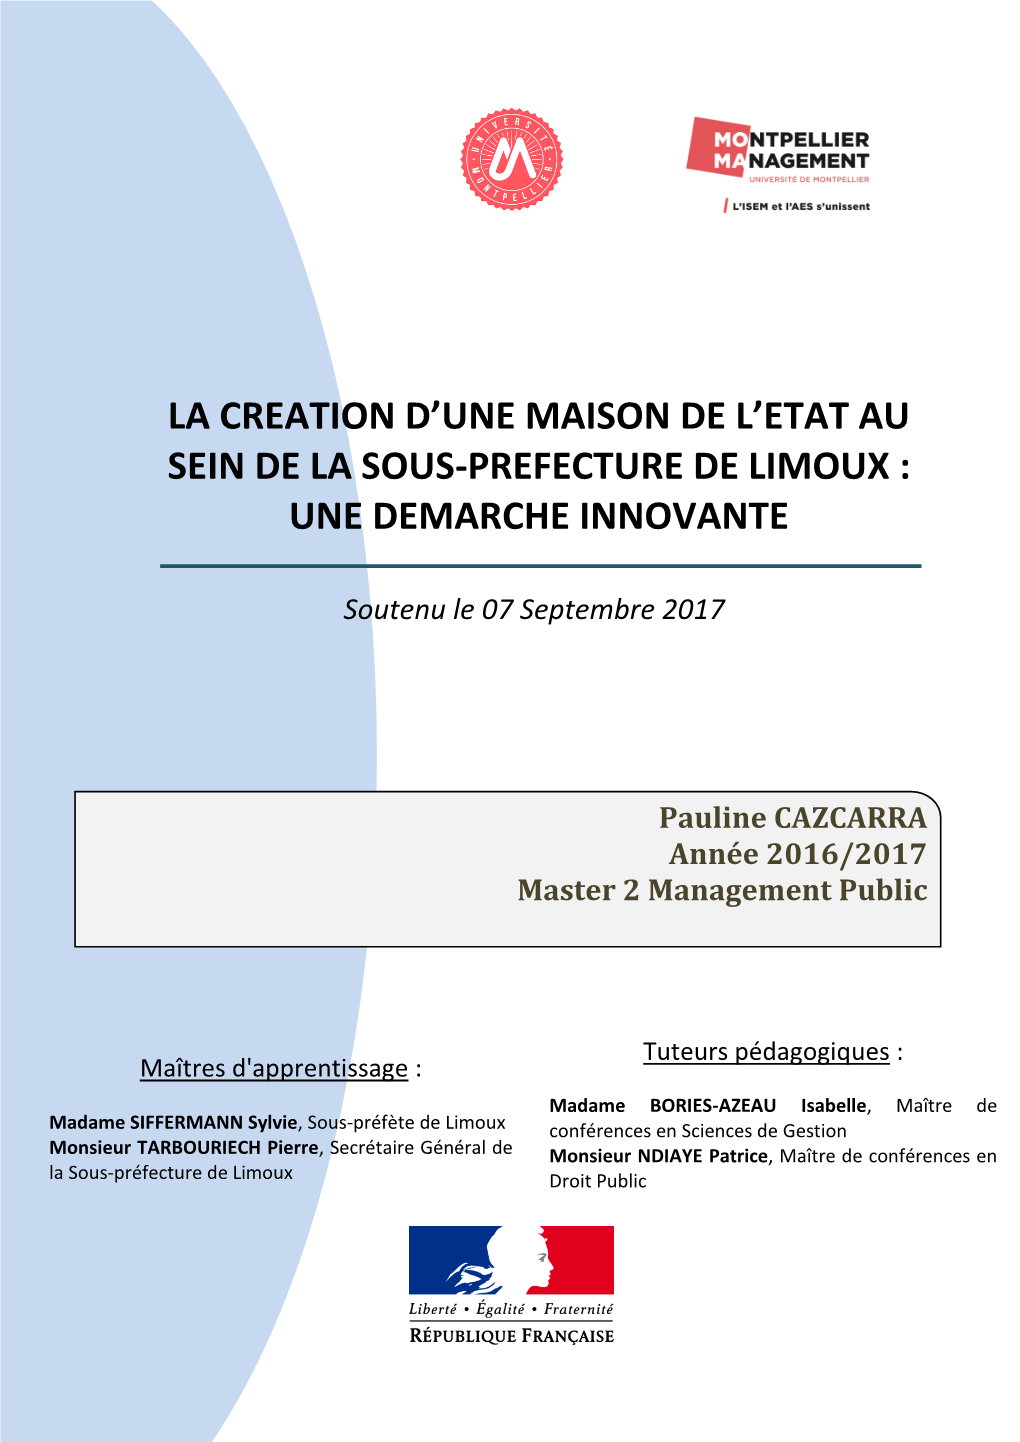 La Creation D'une Maison De L'etat Au Sein De La Sous-Prefecture De Limoux : Une Demarche Innovante